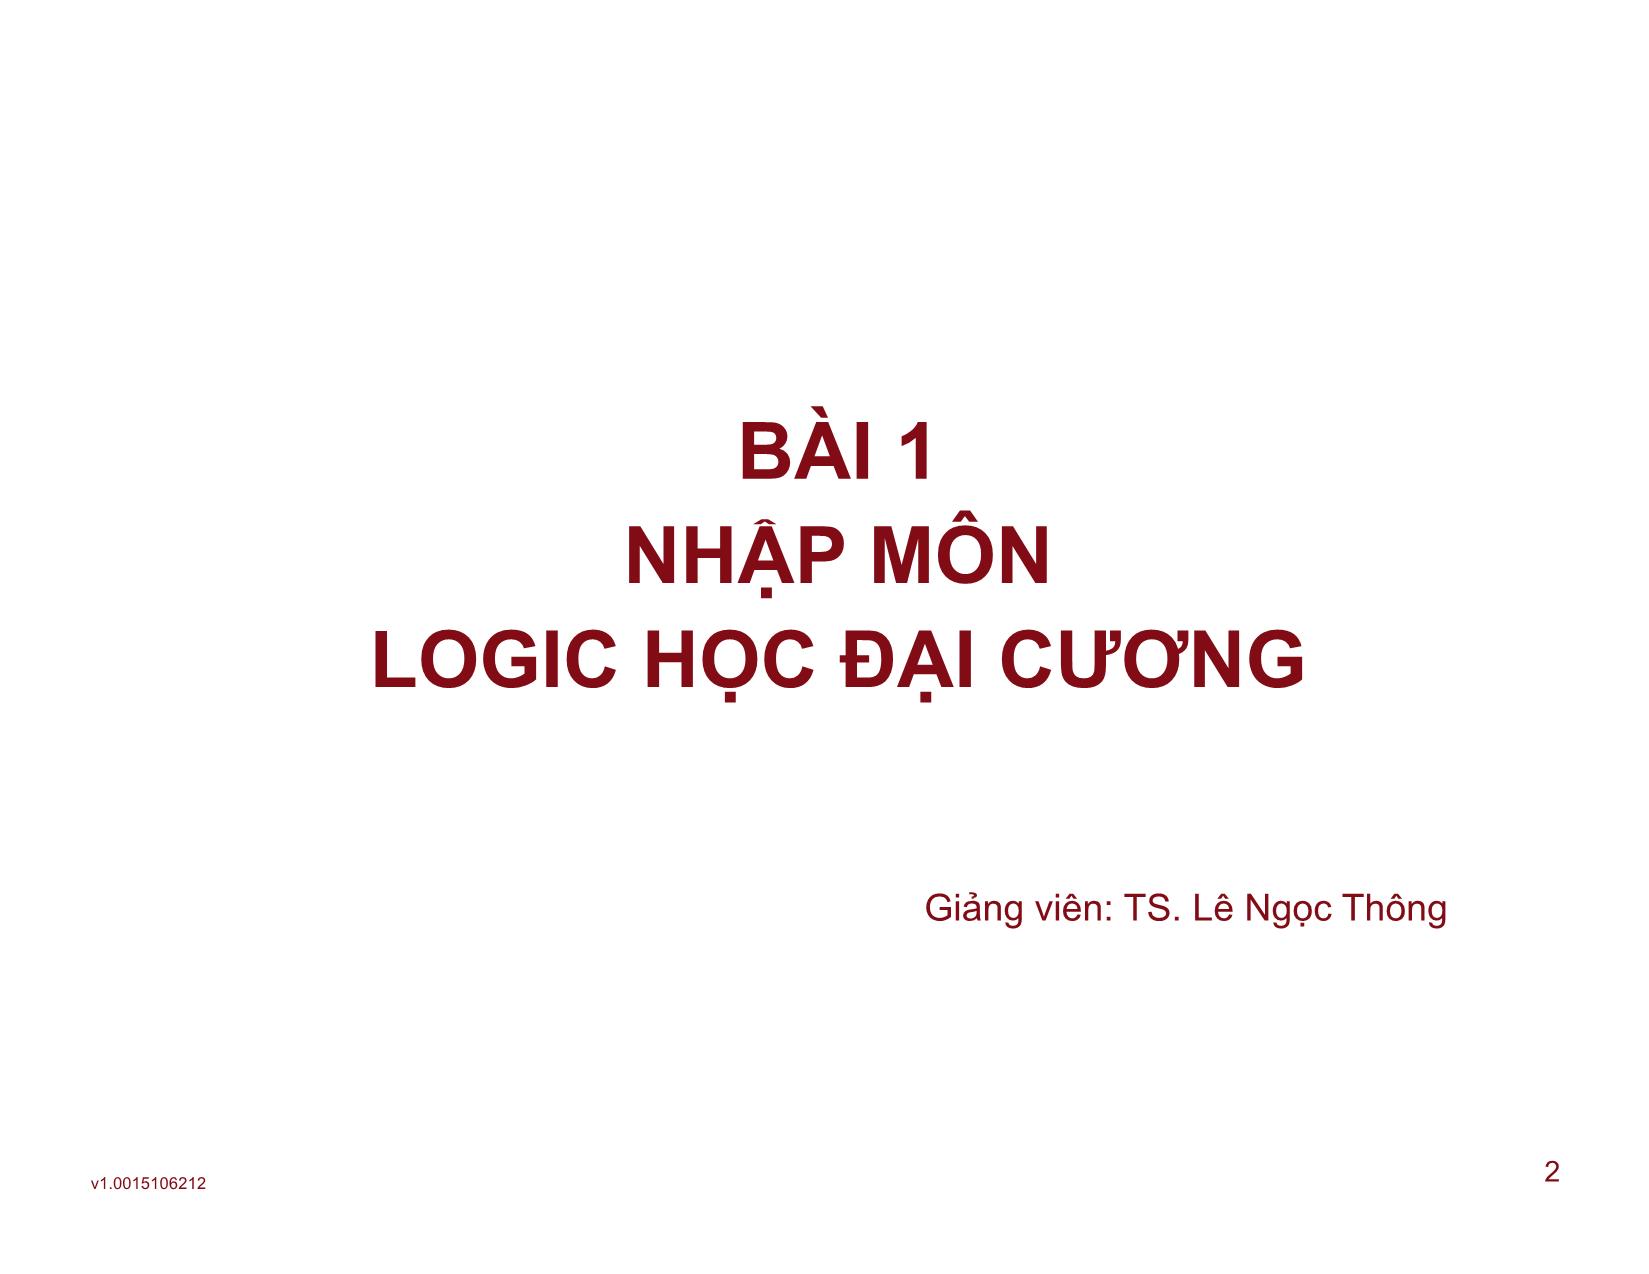 Logic học đại cương - Bài 1: Nhập môn logic học đại cương trang 2